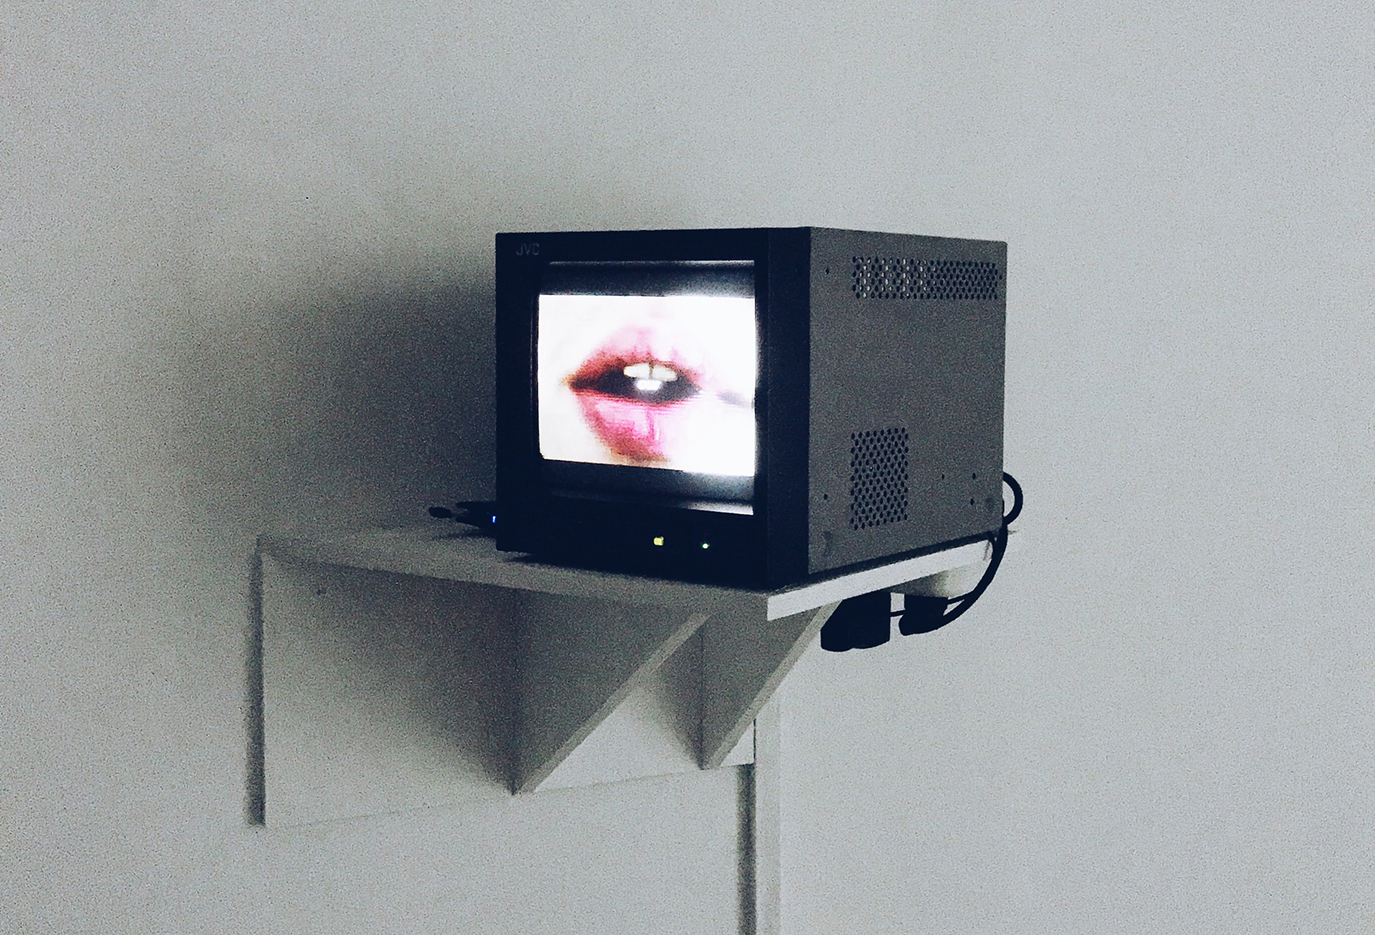 Monitor aan de muur met sprekende mond op het scherm